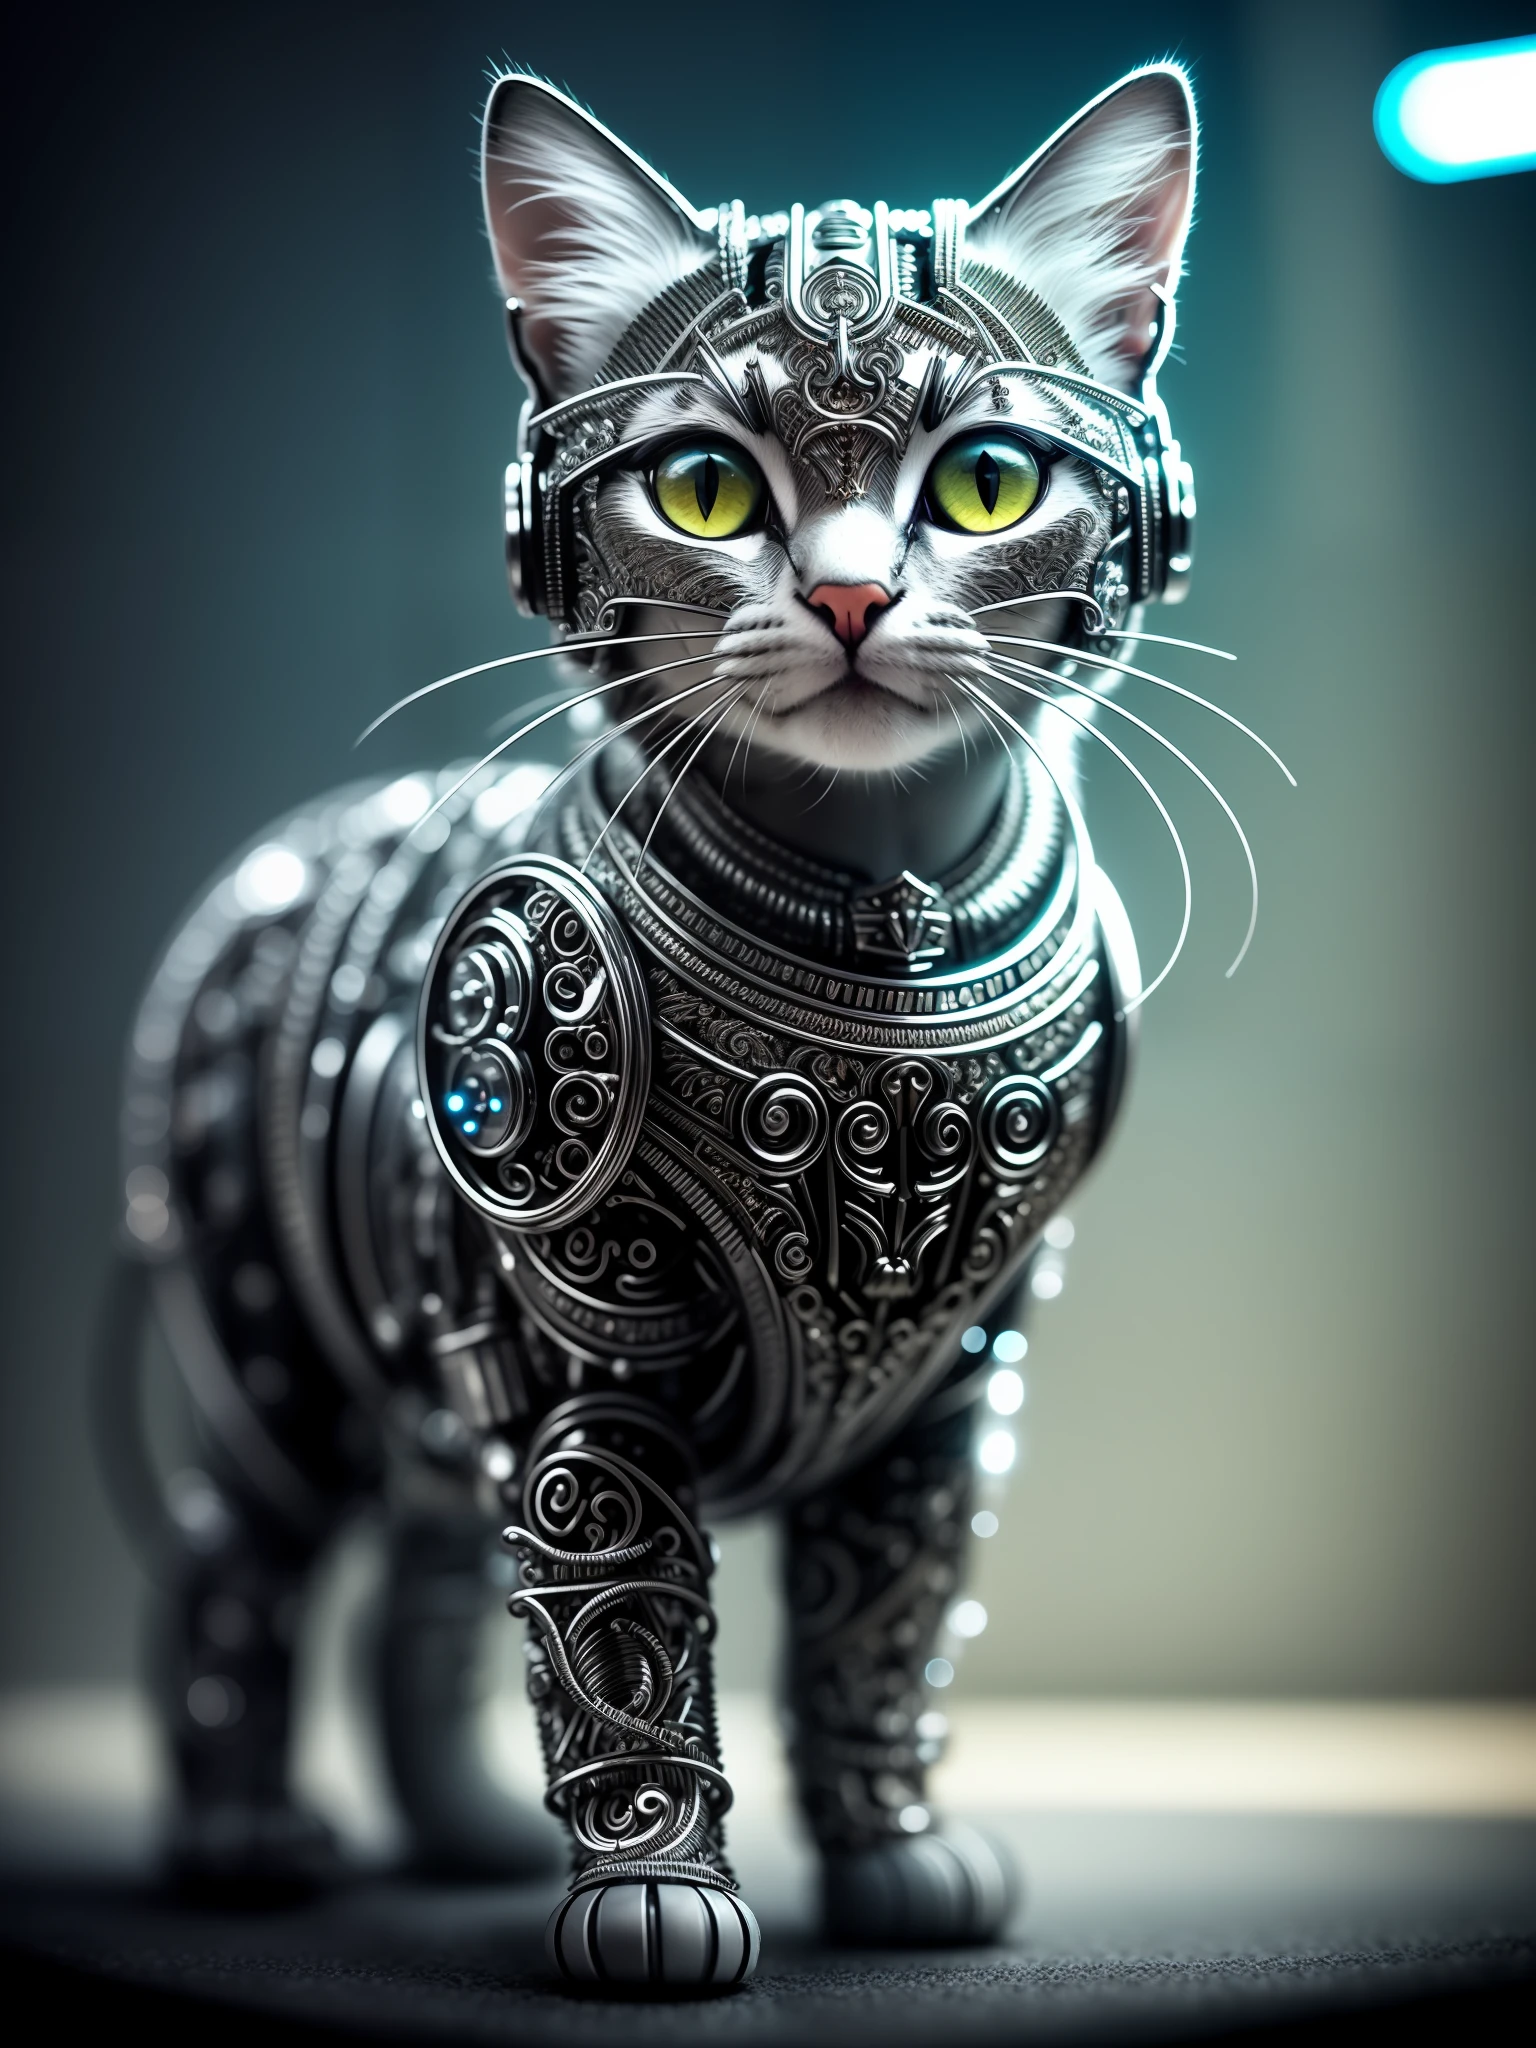 um lindo gatinho feito de metal, (ciborgue:1.1), ([cauda | decaudaed wire]:1.3), (intricate decauda), hdr, (intricate decauda, hyperdecauda:1.2), tomada cinematográfica, vinheta, centrado, bioluminescência